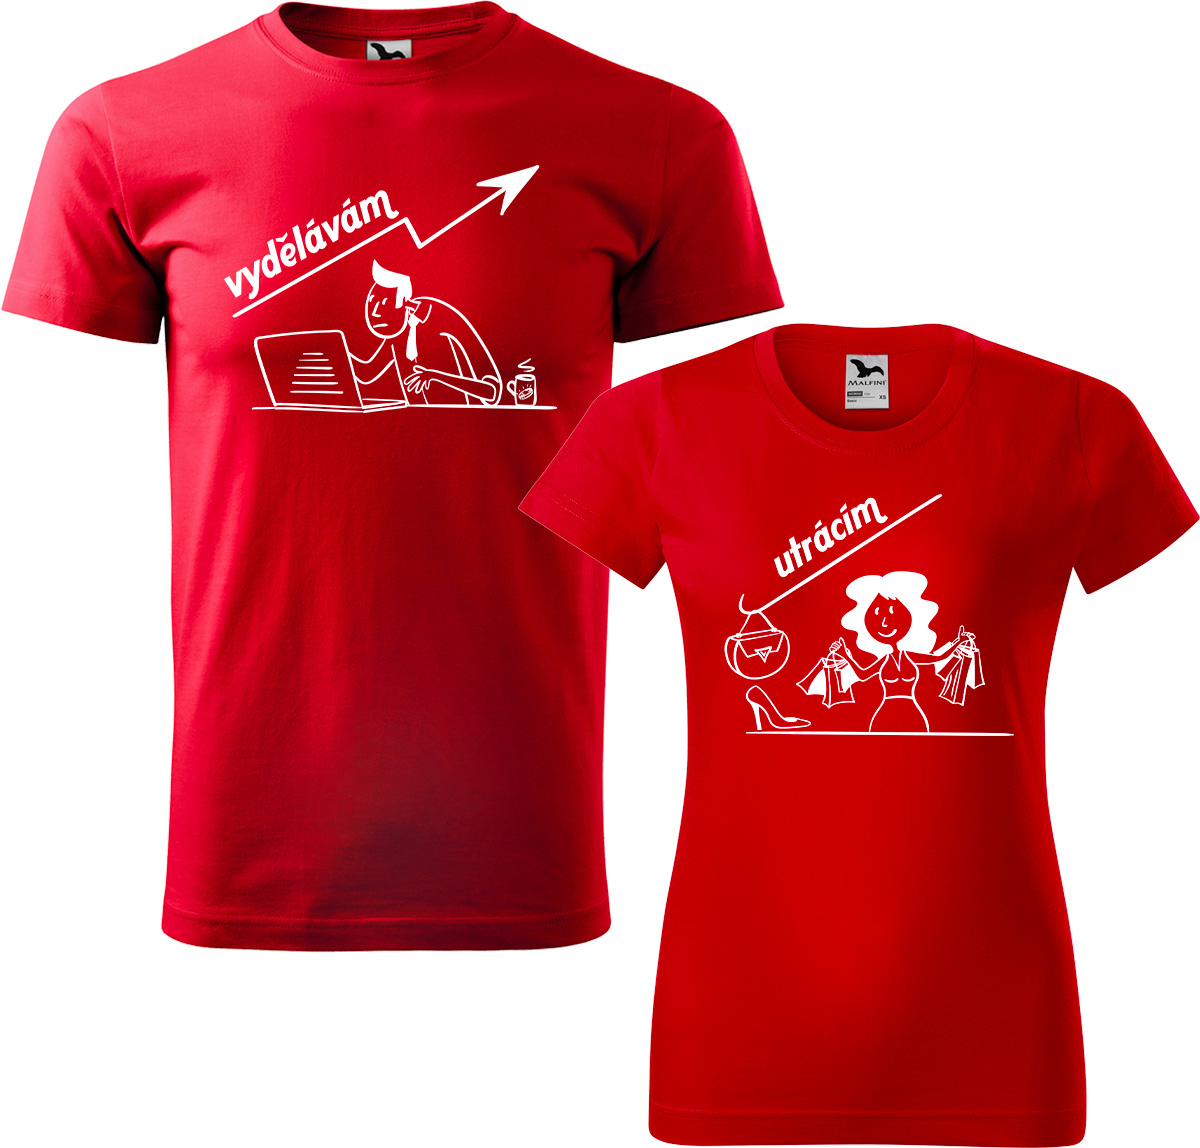 Trička pro páry - Vydělává, utrácí Barva: Červená (07), Velikost dámské tričko: 3XL, Velikost pánské tričko: 4XL